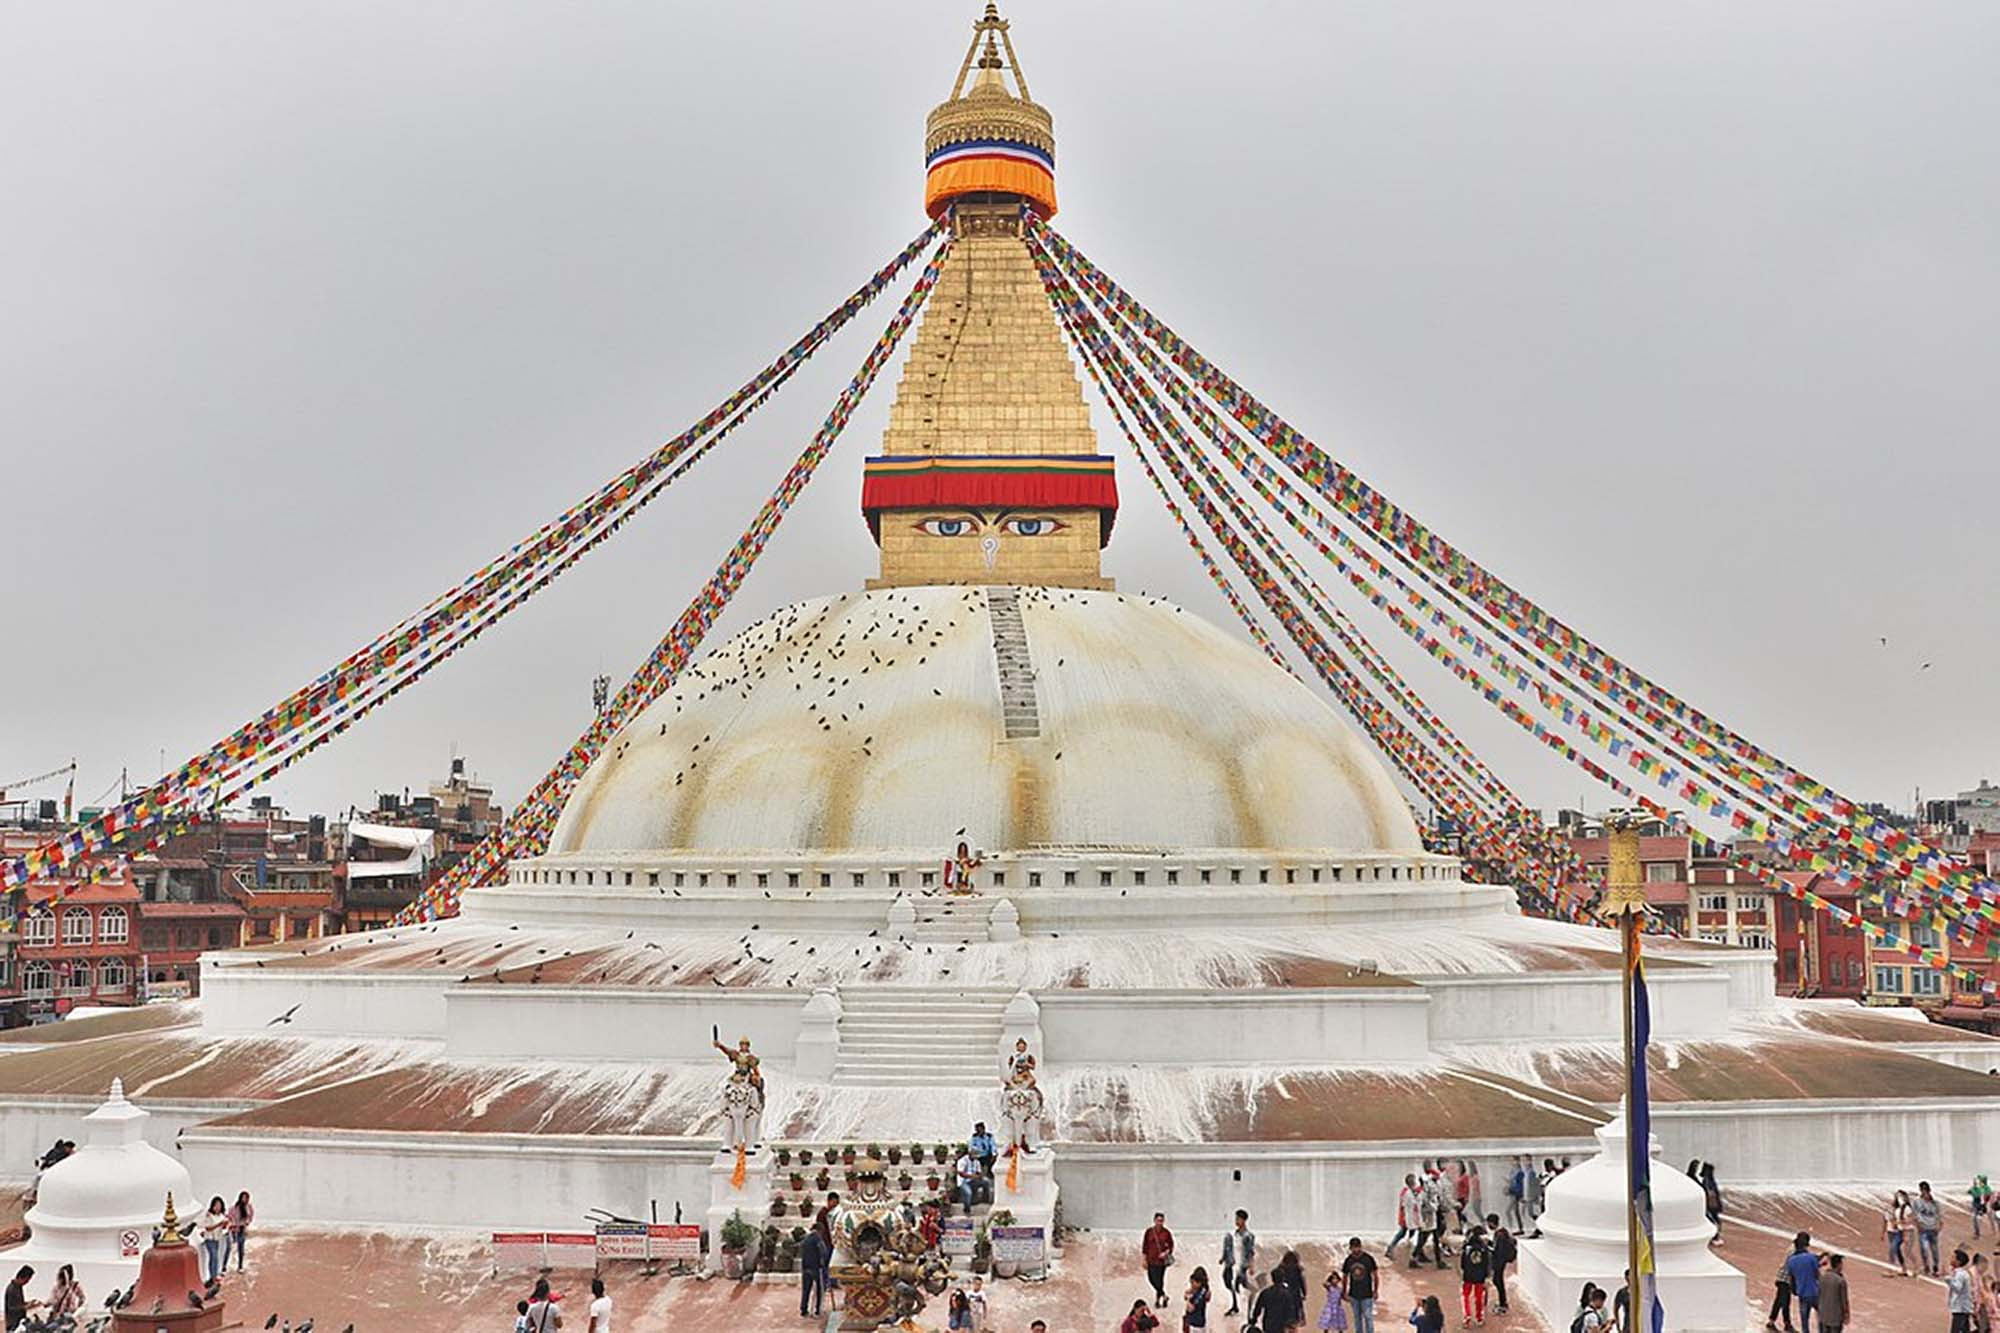 Boudhanath Stupa, Kathmandu, Nepal